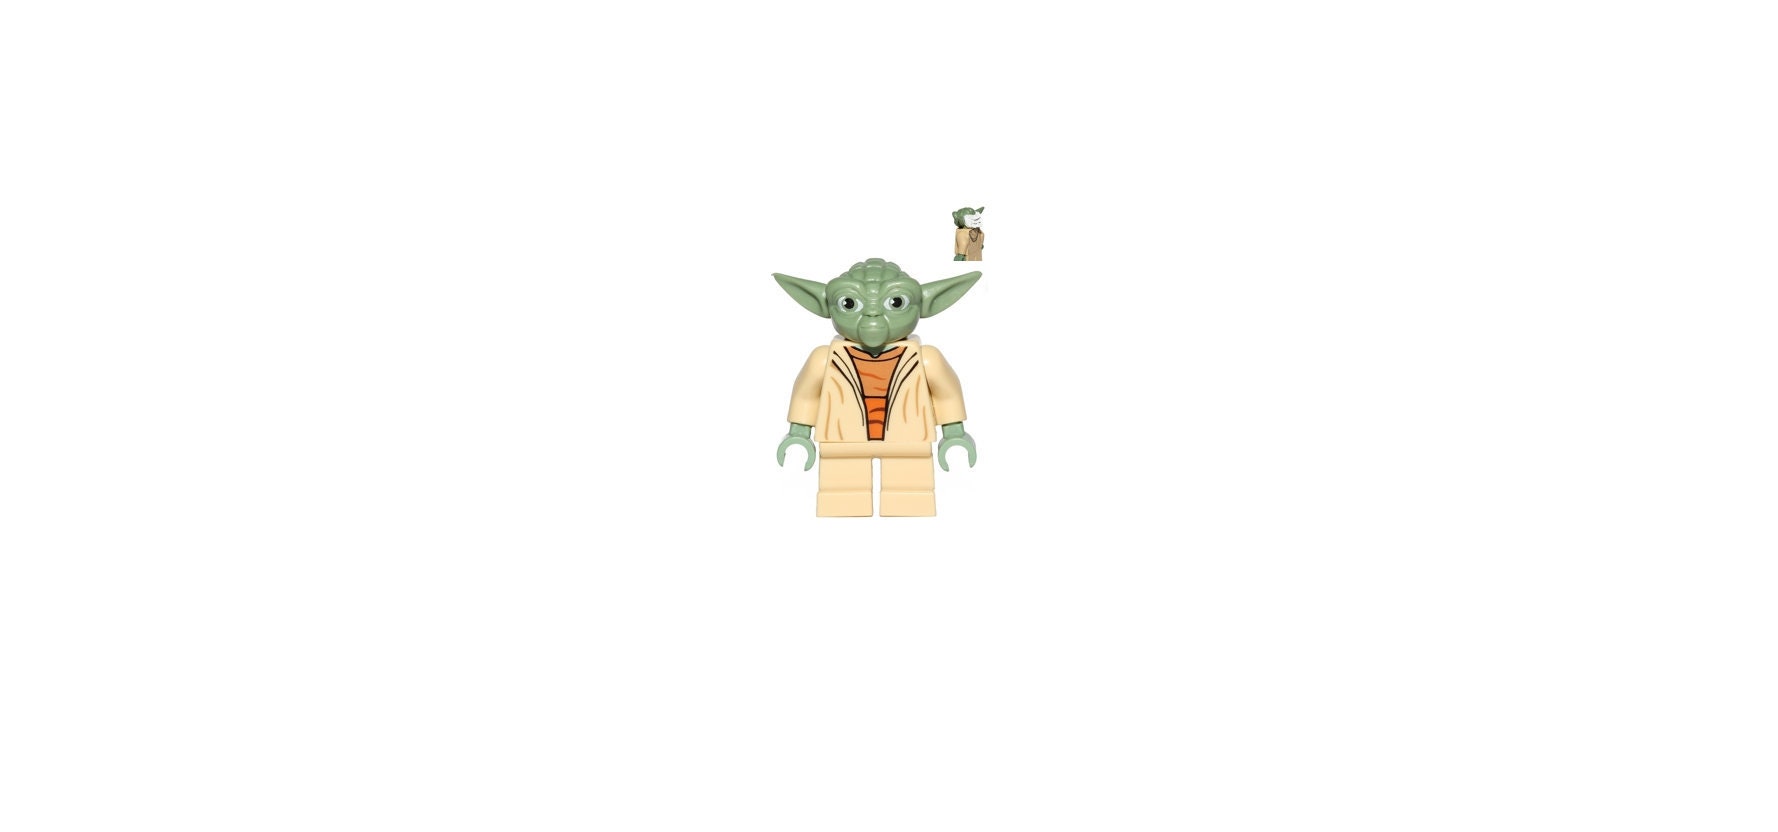 Chào mừng đến với thế giới Jedi Master Yoda Clone Wars! Hãy theo dõi hình ảnh liên quan để được chiêm ngưỡng sự khéo léo và uyển chuyển của Yoda! Với khả năng chiến đấu và sức mạnh phi thường của một Jedi Master, Yoda sẽ làm cho bạn nể phục!